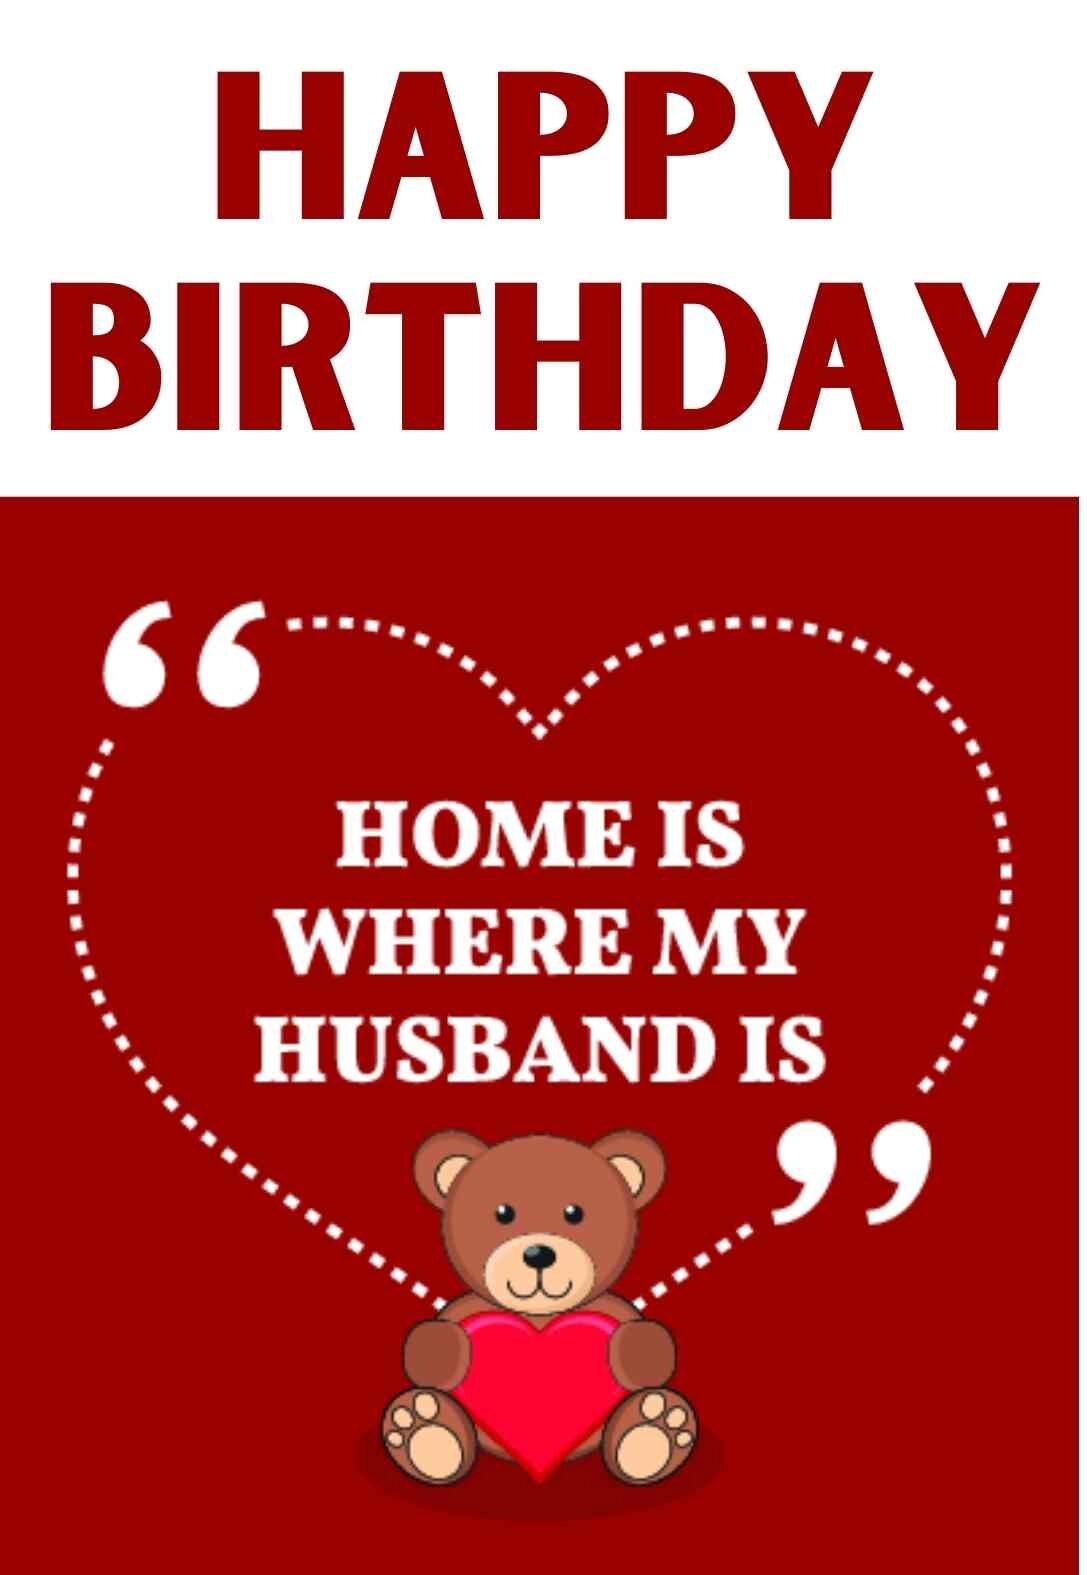 Printable Husband Birthday Cards - Printable World Holiday